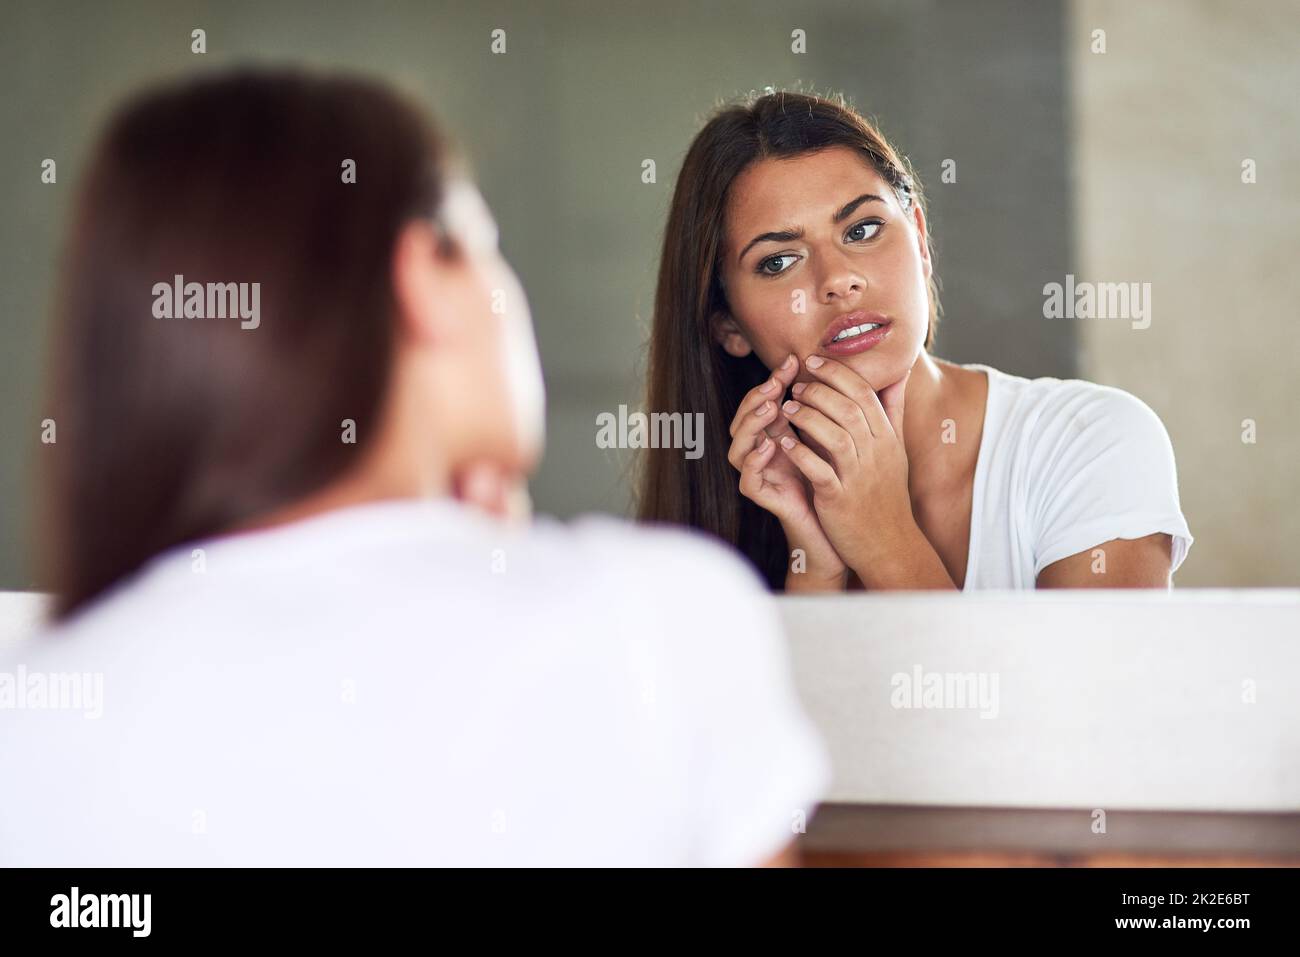 D'où vient cette situation. Prise de vue d'une jeune femme qui se froisait et qui examine une imperfection sur sa peau dans le miroir à la maison. Banque D'Images